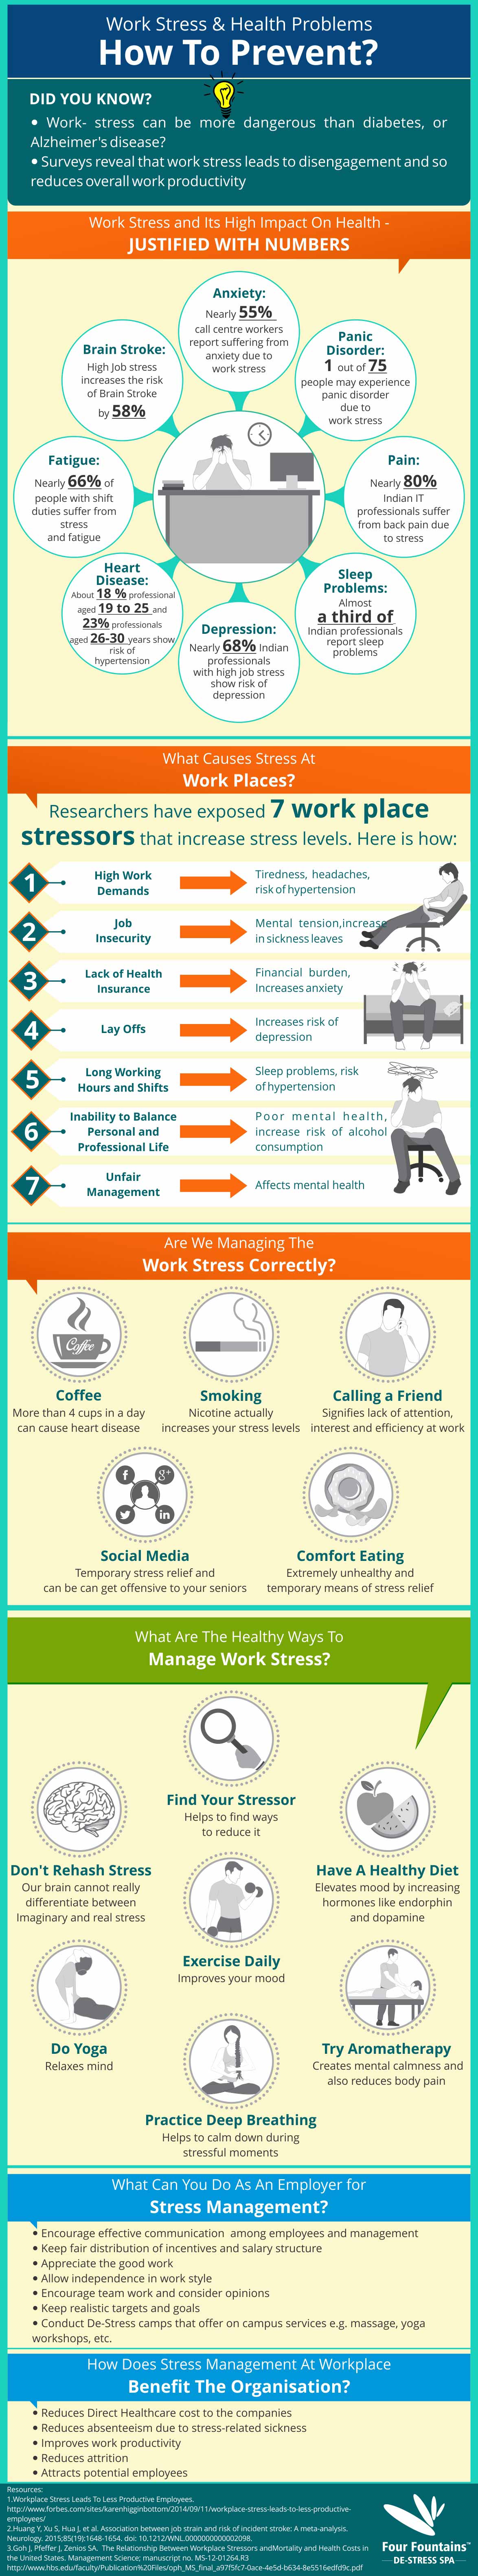 How to Prevent Work Stress & Health Problems - Atlantictraining.com